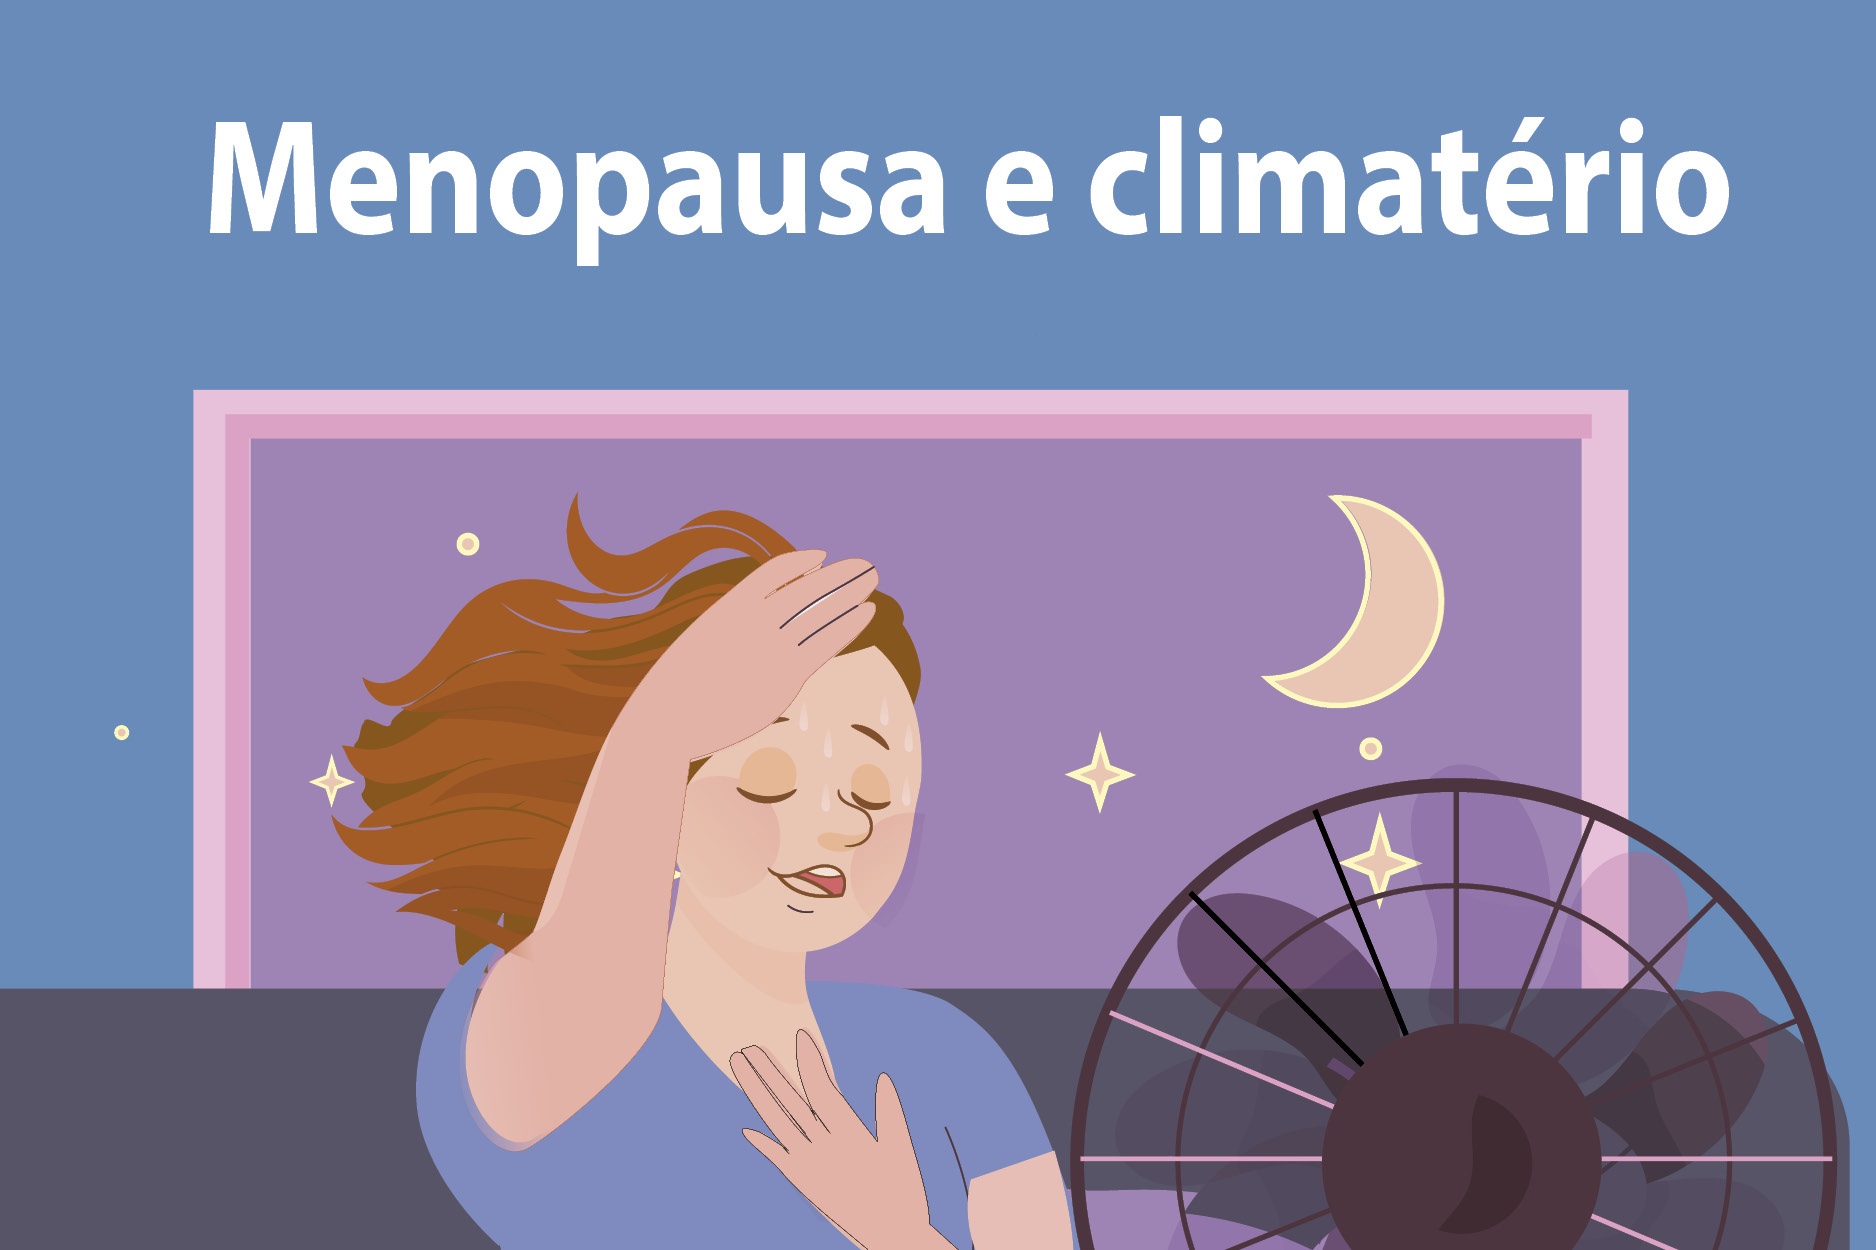 Vereadoras sugerem criação de projeto para orientar mulheres no climatério e menopausa 